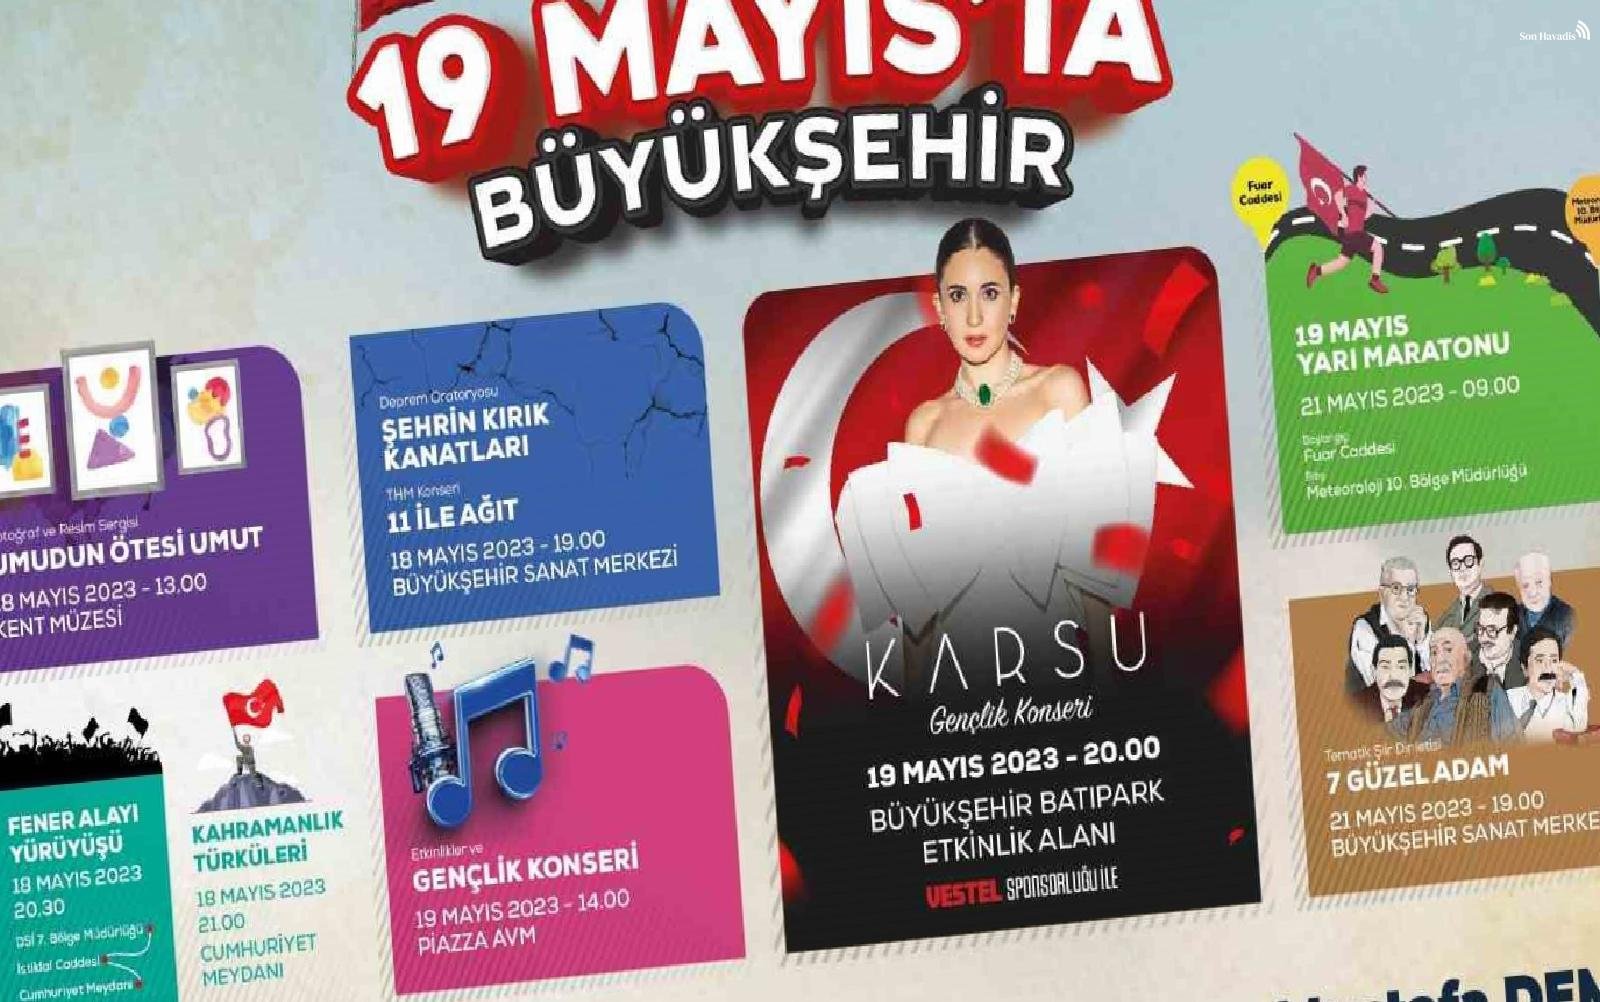 Samsun'da 19 Mayıs coşkusu yaşanacak